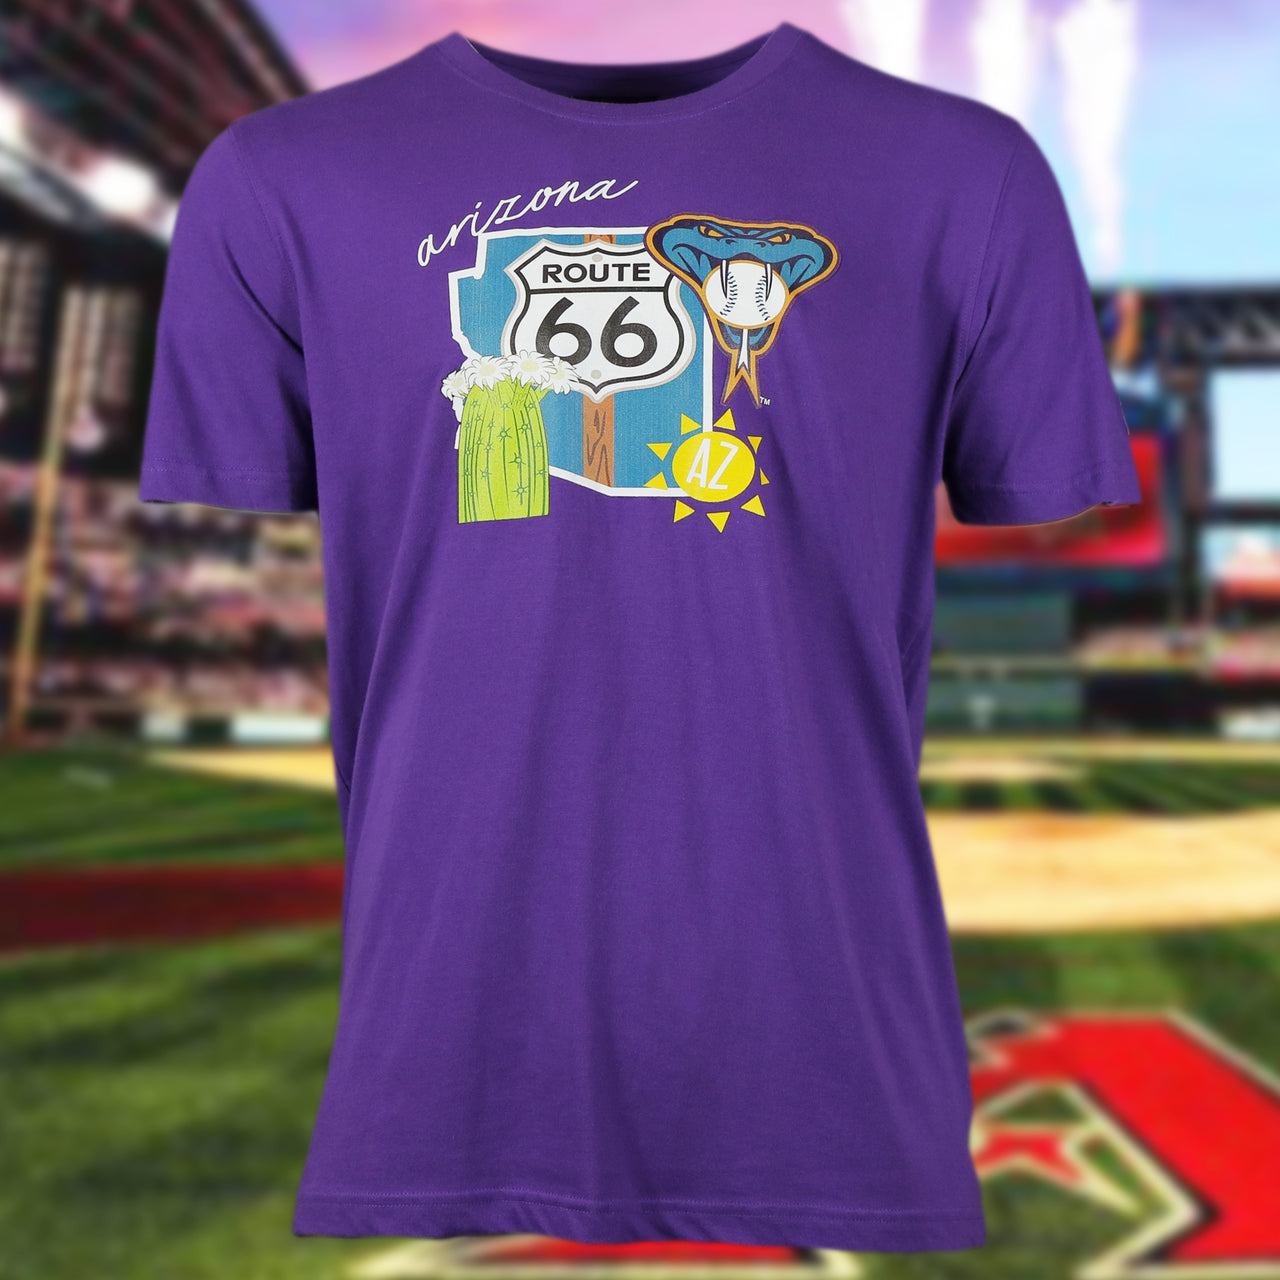 Arizona Diamondbacks "City Cluster" 59Fifty Fitted Matching Purple T-Shirt